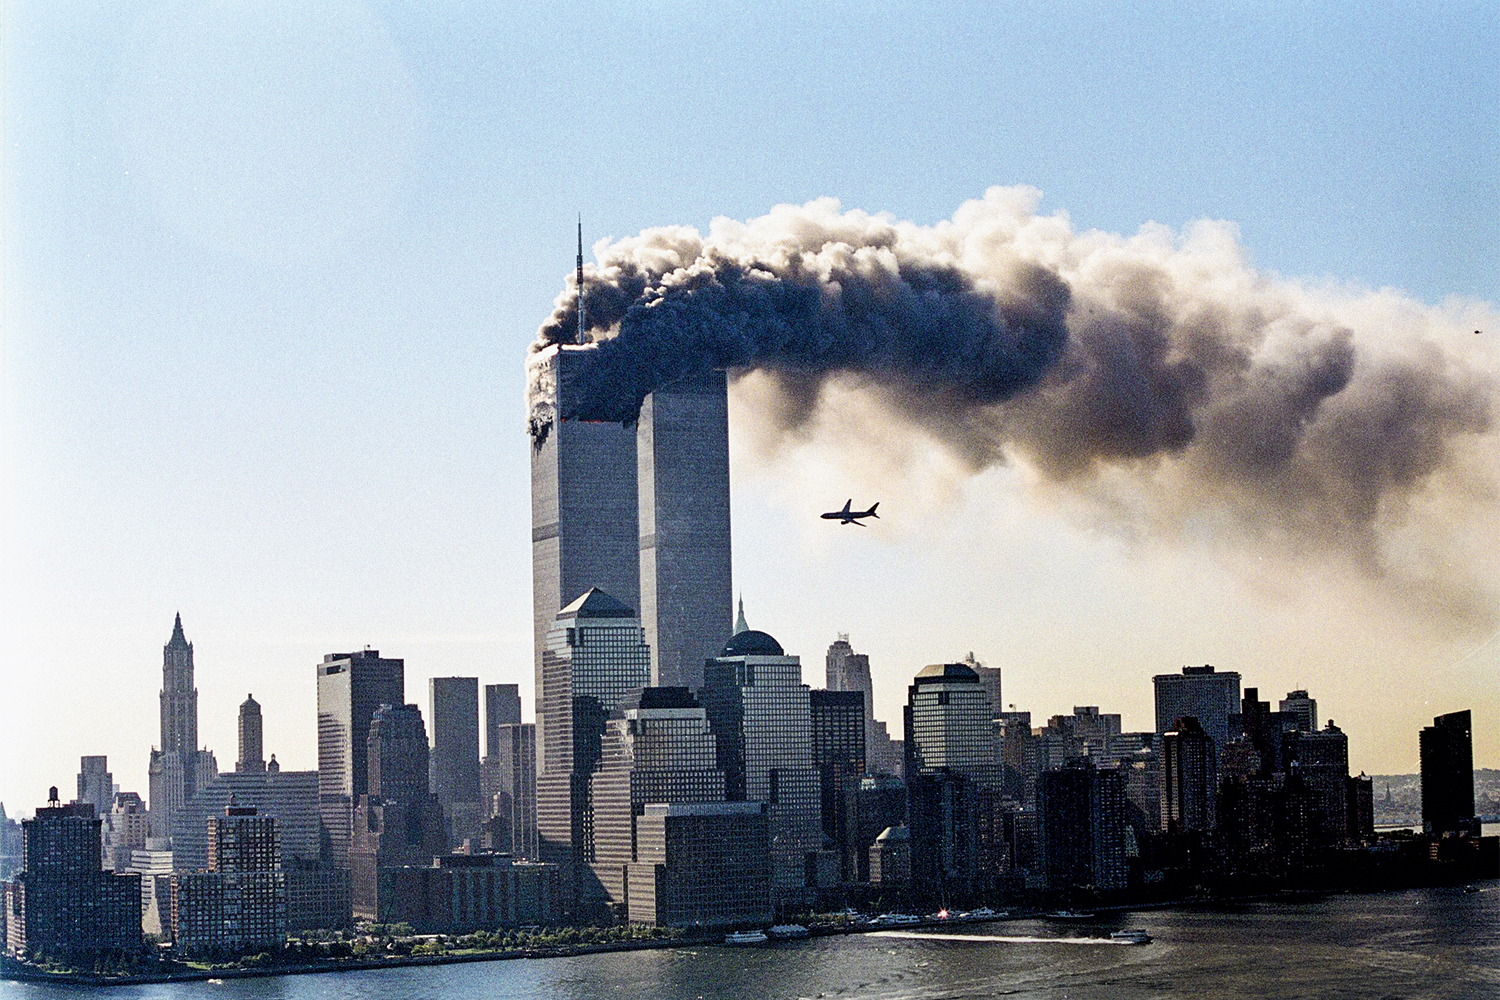 9 11 games. ВТЦ Нью-Йорк 2001. Башни-Близнецы 11 сентября 2001. 11 Сентября 2001 года башни Близнецы.